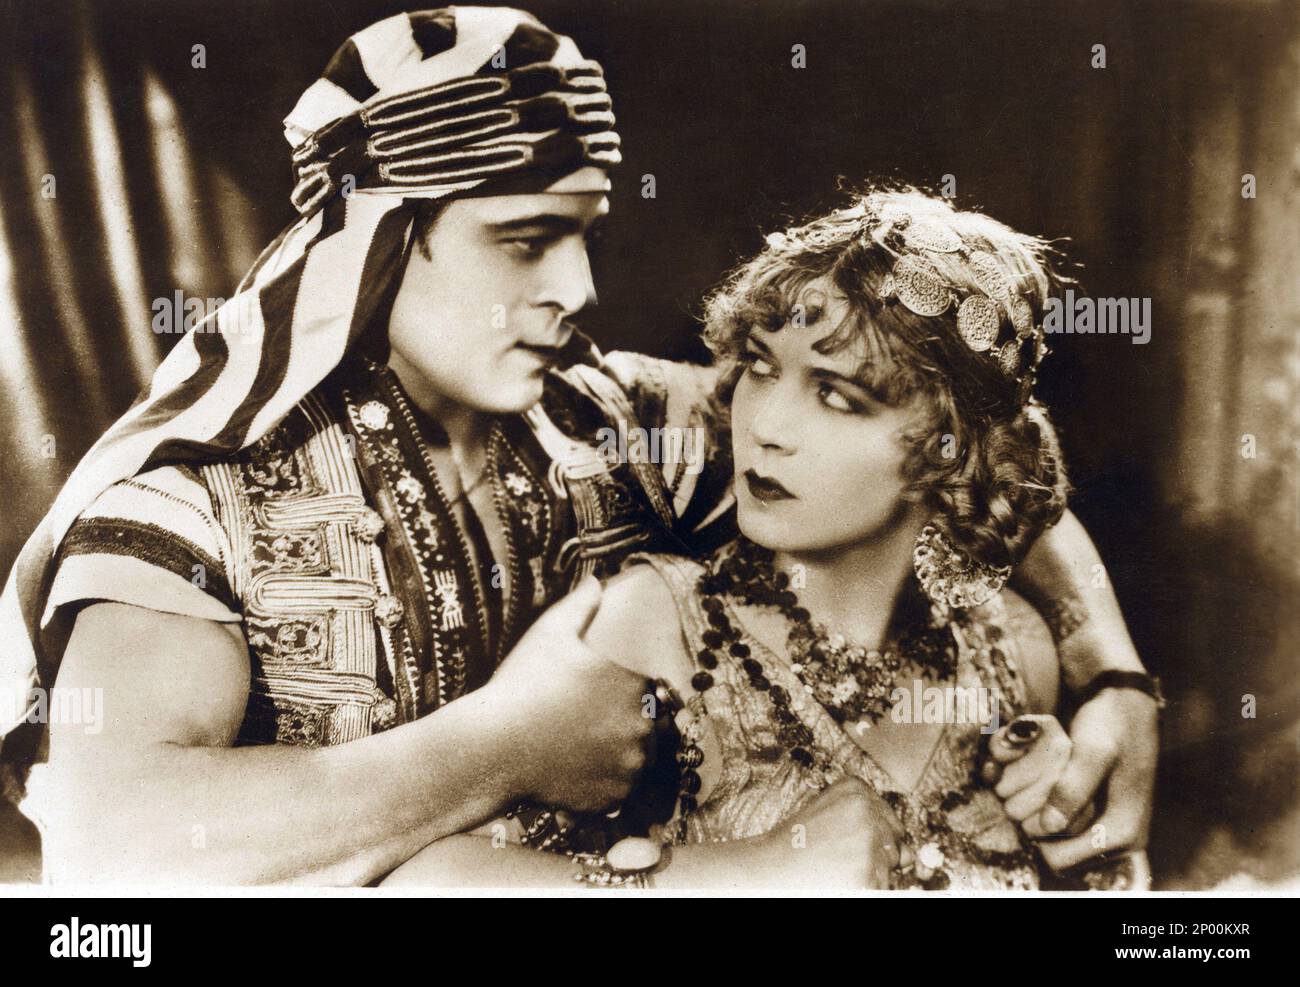 1926 , USA : The silent screen movie actor RUDOLPH VALENTINO ( born Rodolfo Guglielmi ,  1895 - 1926 ) with WILMA BANKY  in THE SON OF THE SHEIK ( Il figlio dello Sceicco ) by George Fitzmaurice , from the novel by Edith Maude Hull , Paramount Picture - CINEMA MUTO - RODOLFO - attore cinematografico - VILMA - LATIN LOVER - italoamericano - italo americano - italo-americano - emigrant - emigrante - italo-american - portrait - ritratto - turbante - turban  - arab - arabo - abbraccio - embrace - kiss - bacio - innamorati - lovers - amanti   ----  Archivio GBB Stock Photo